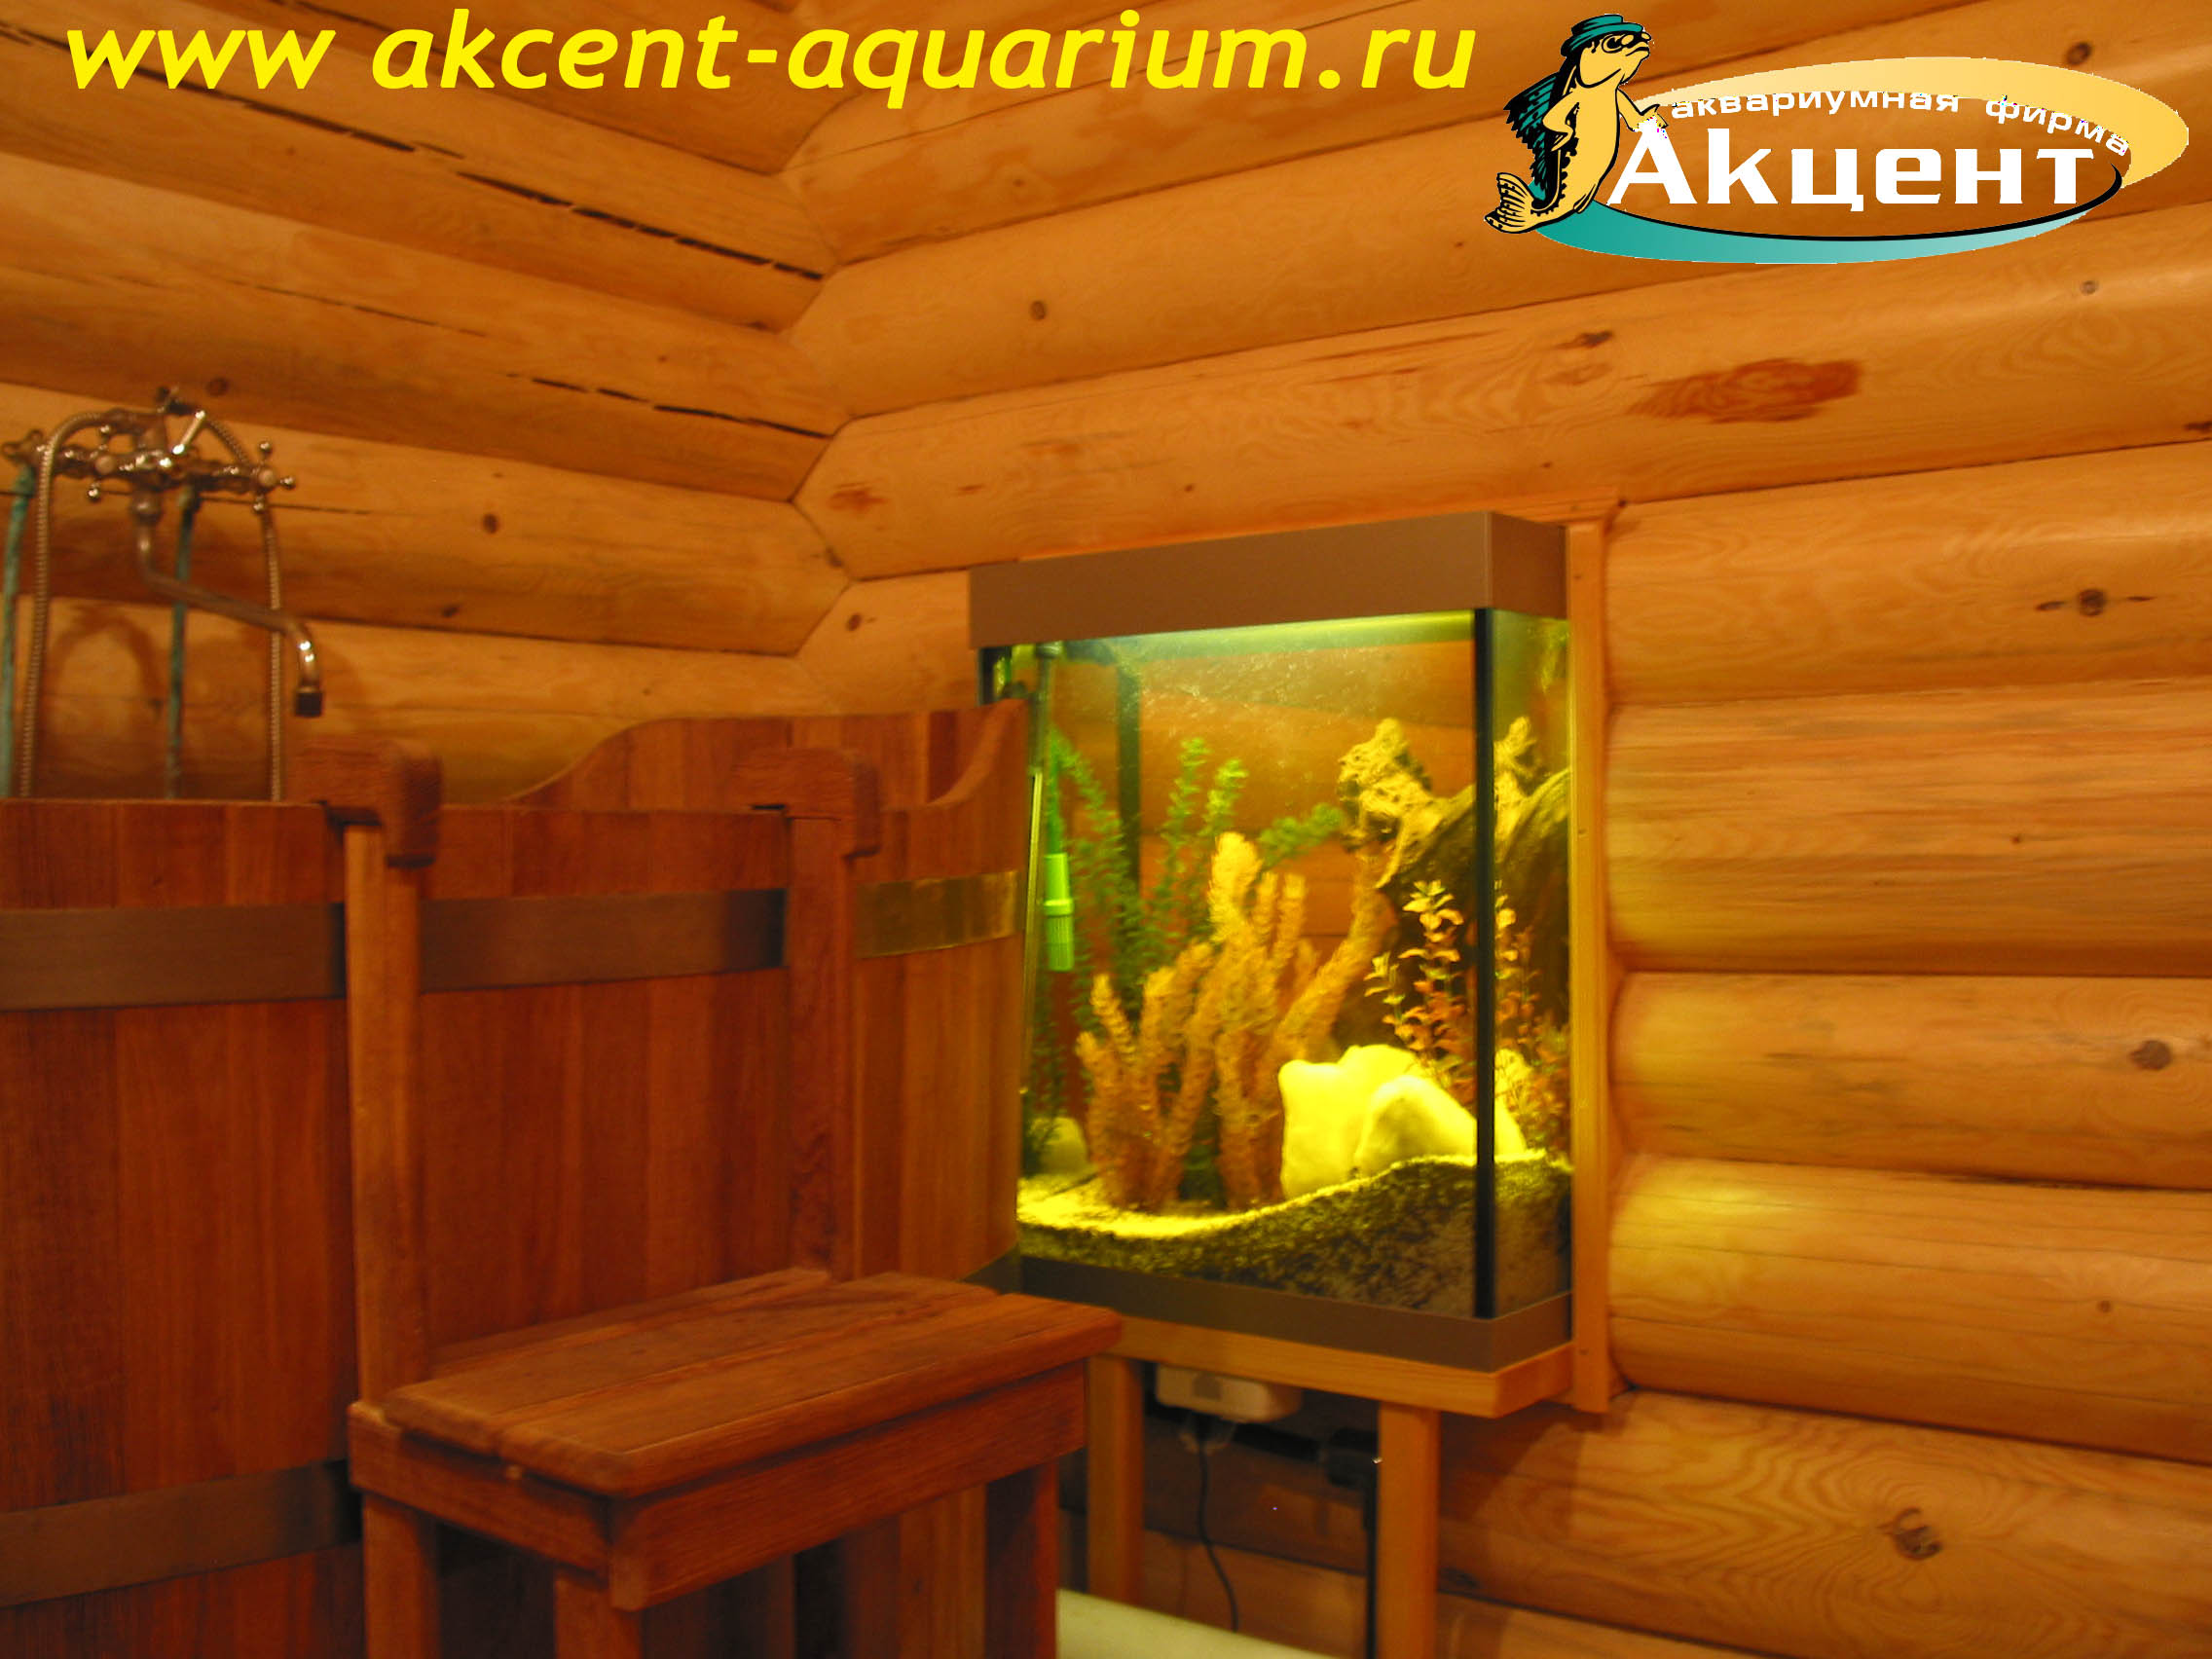 Акцент-аквариум, аквариум 180л, просмотровый, в бане